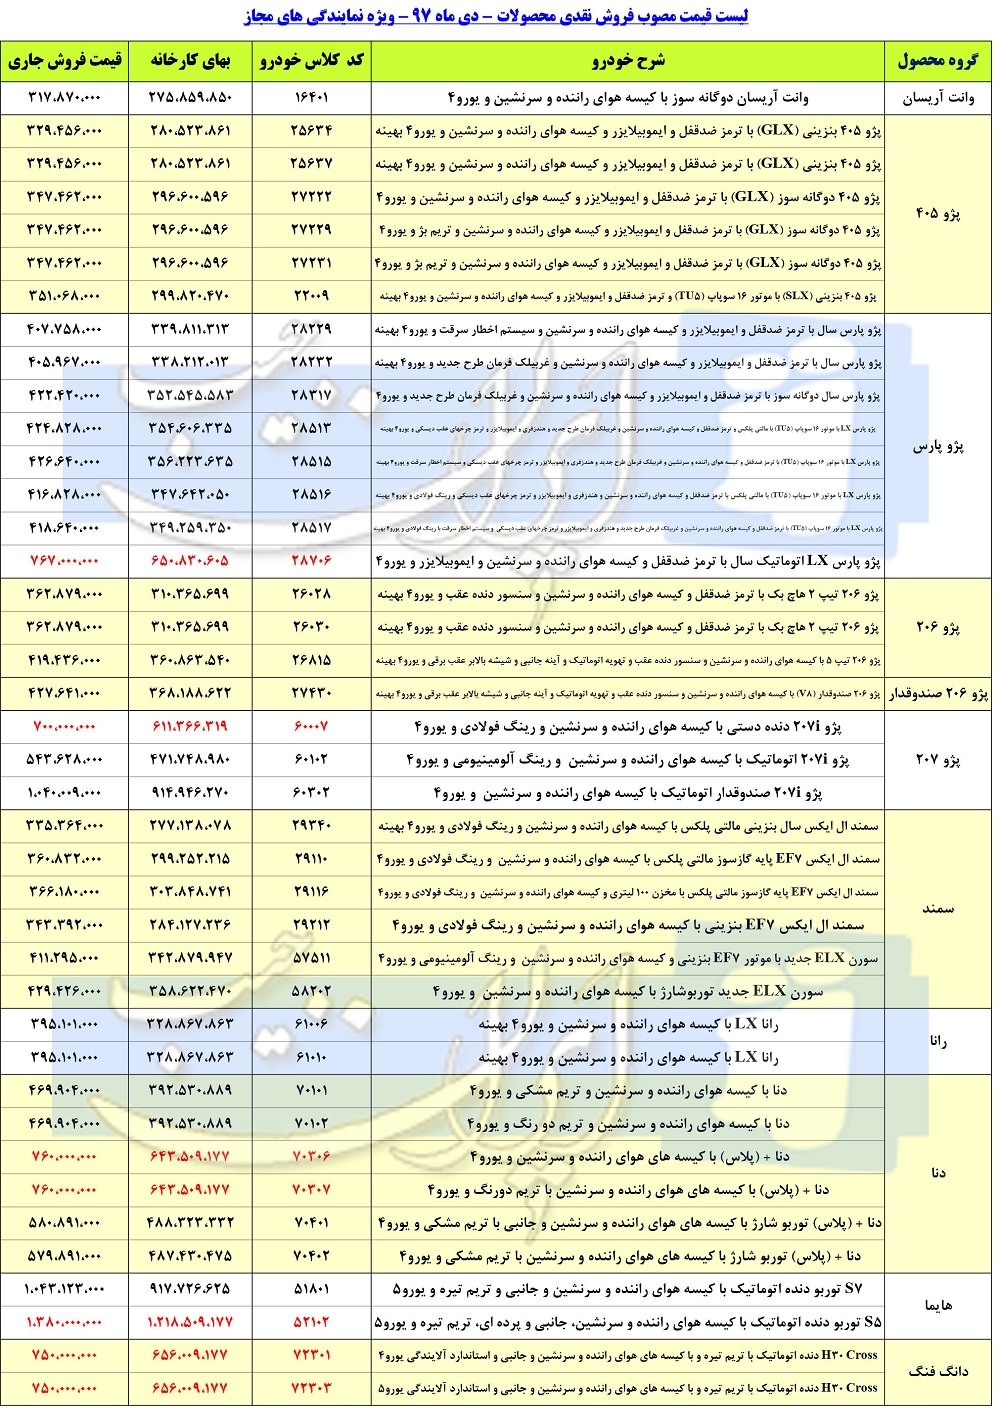 لیست قیمت کارخانه ای محصولات ایران خودرو - دی 97